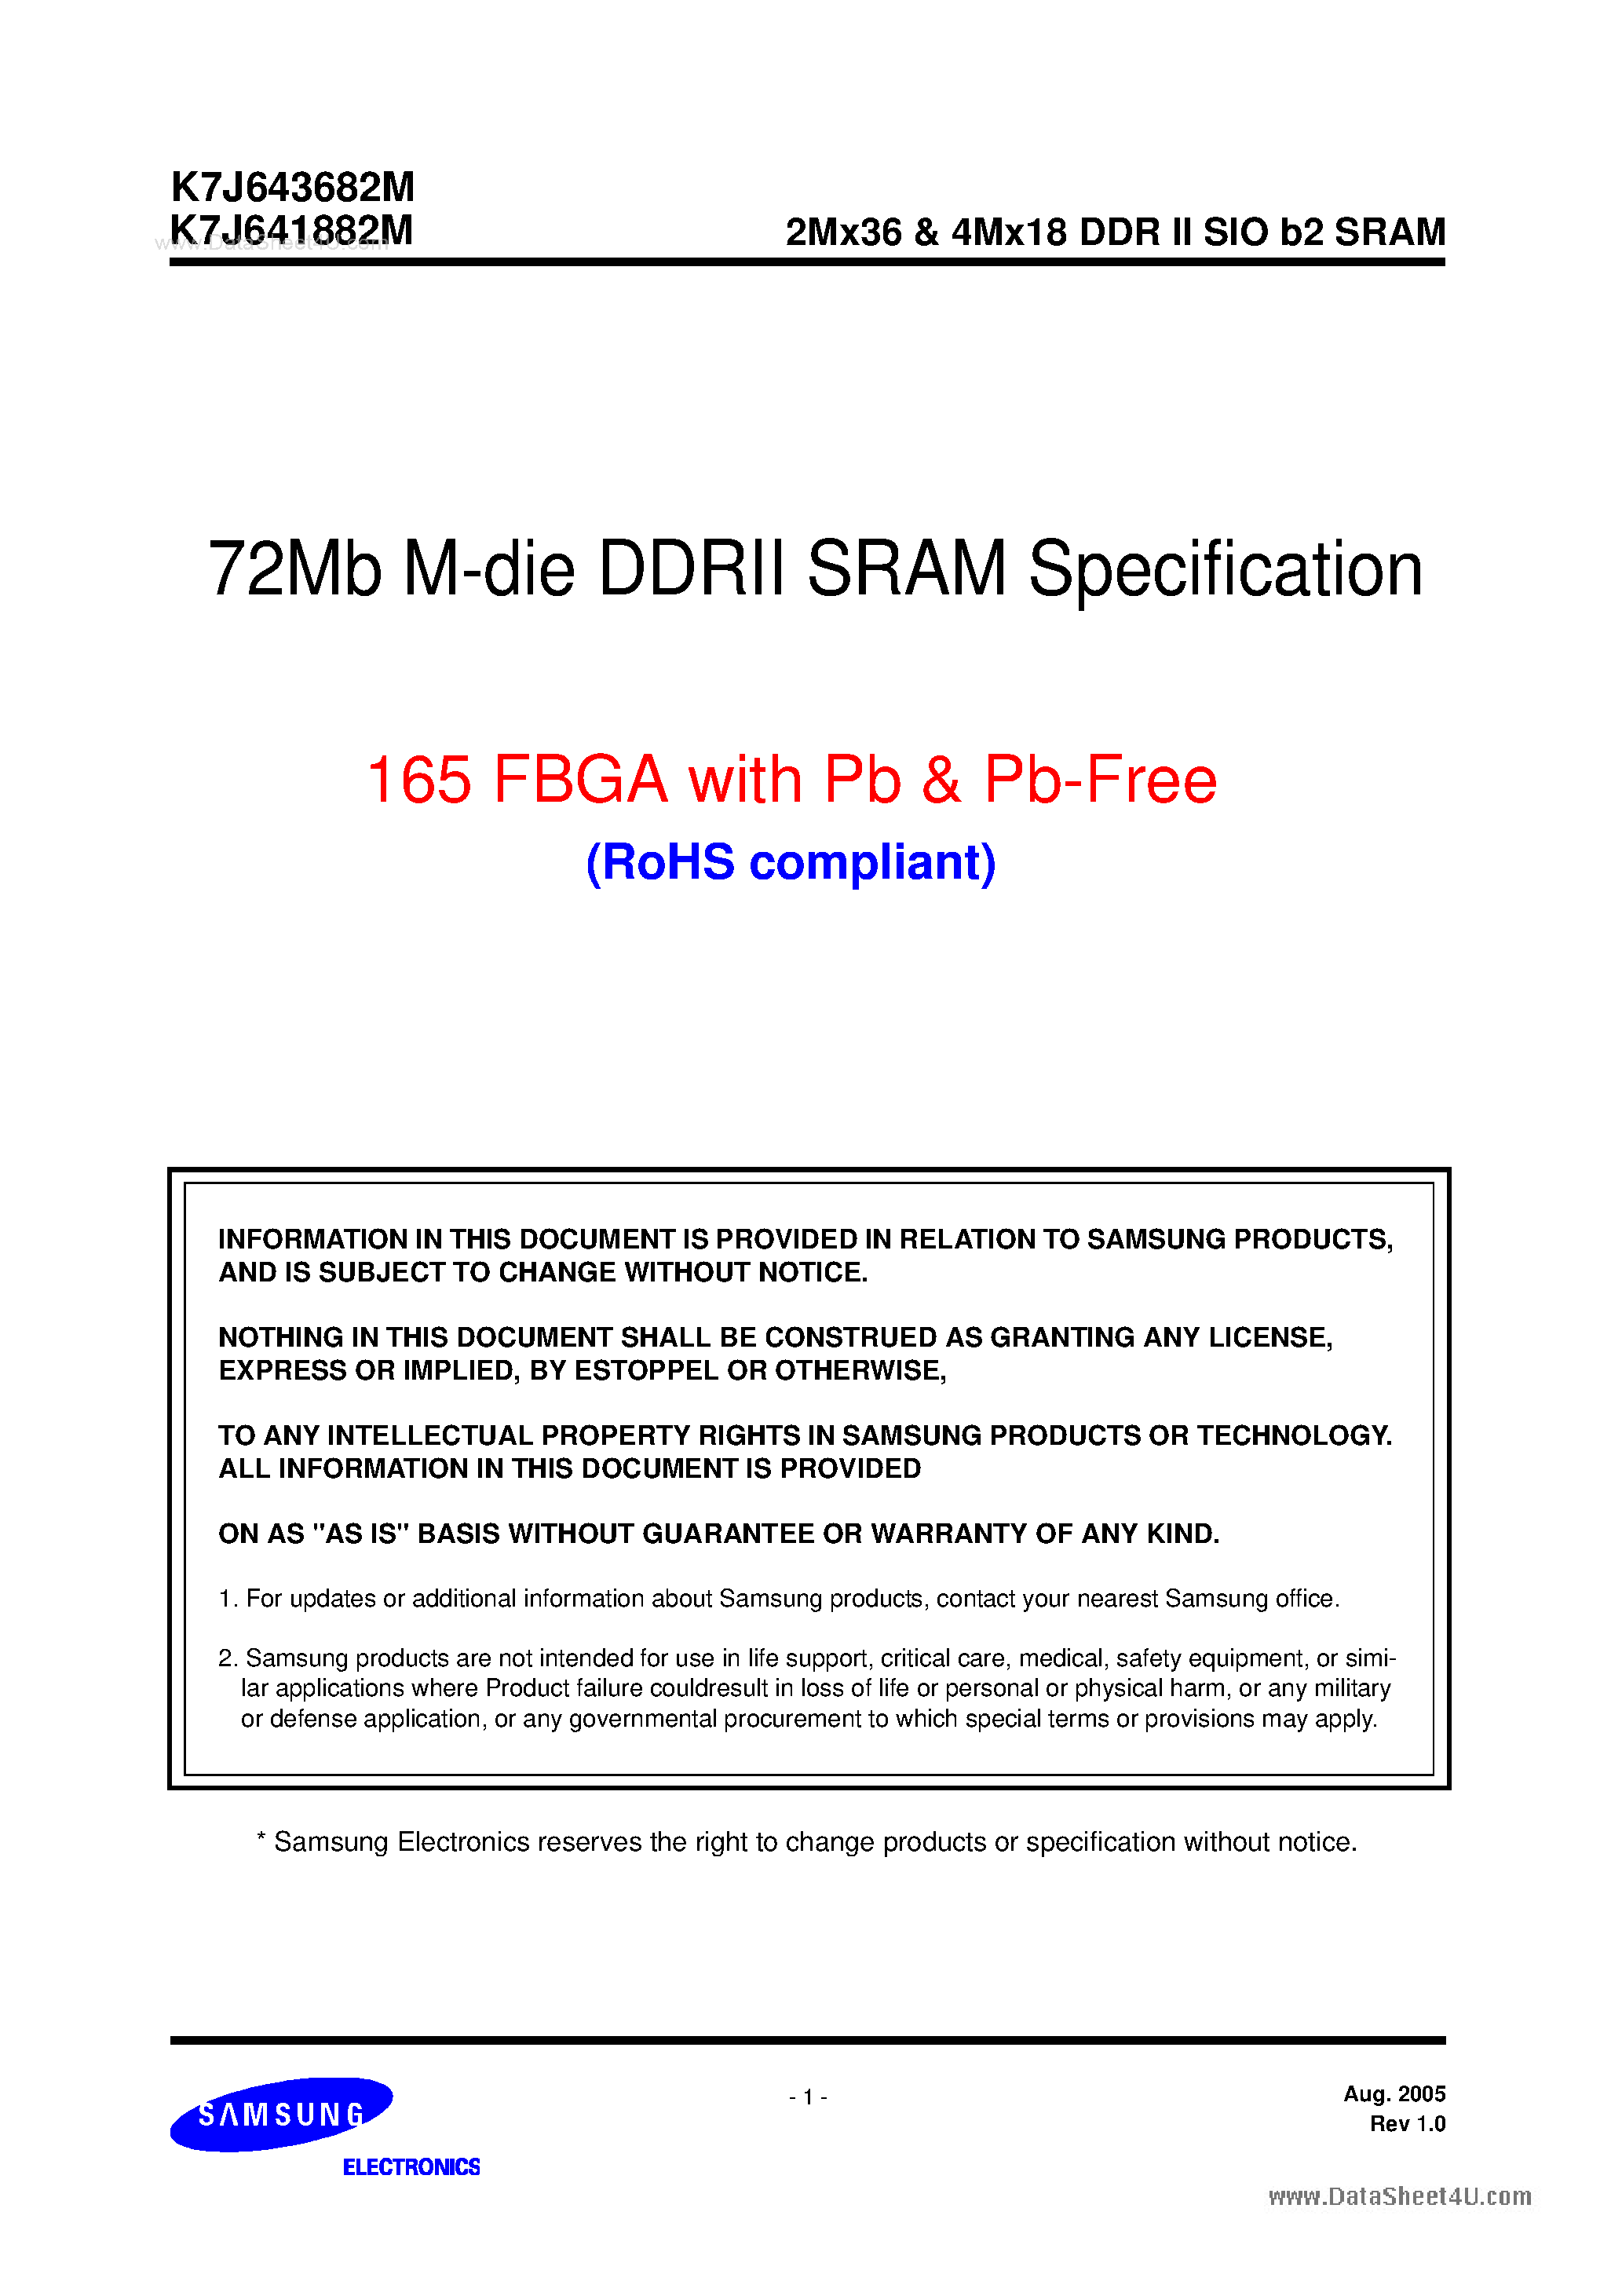 Даташит K7J641882M - (K7J641882M / K7J643682M) 72Mb M-die DDRII SRAM Specification страница 1